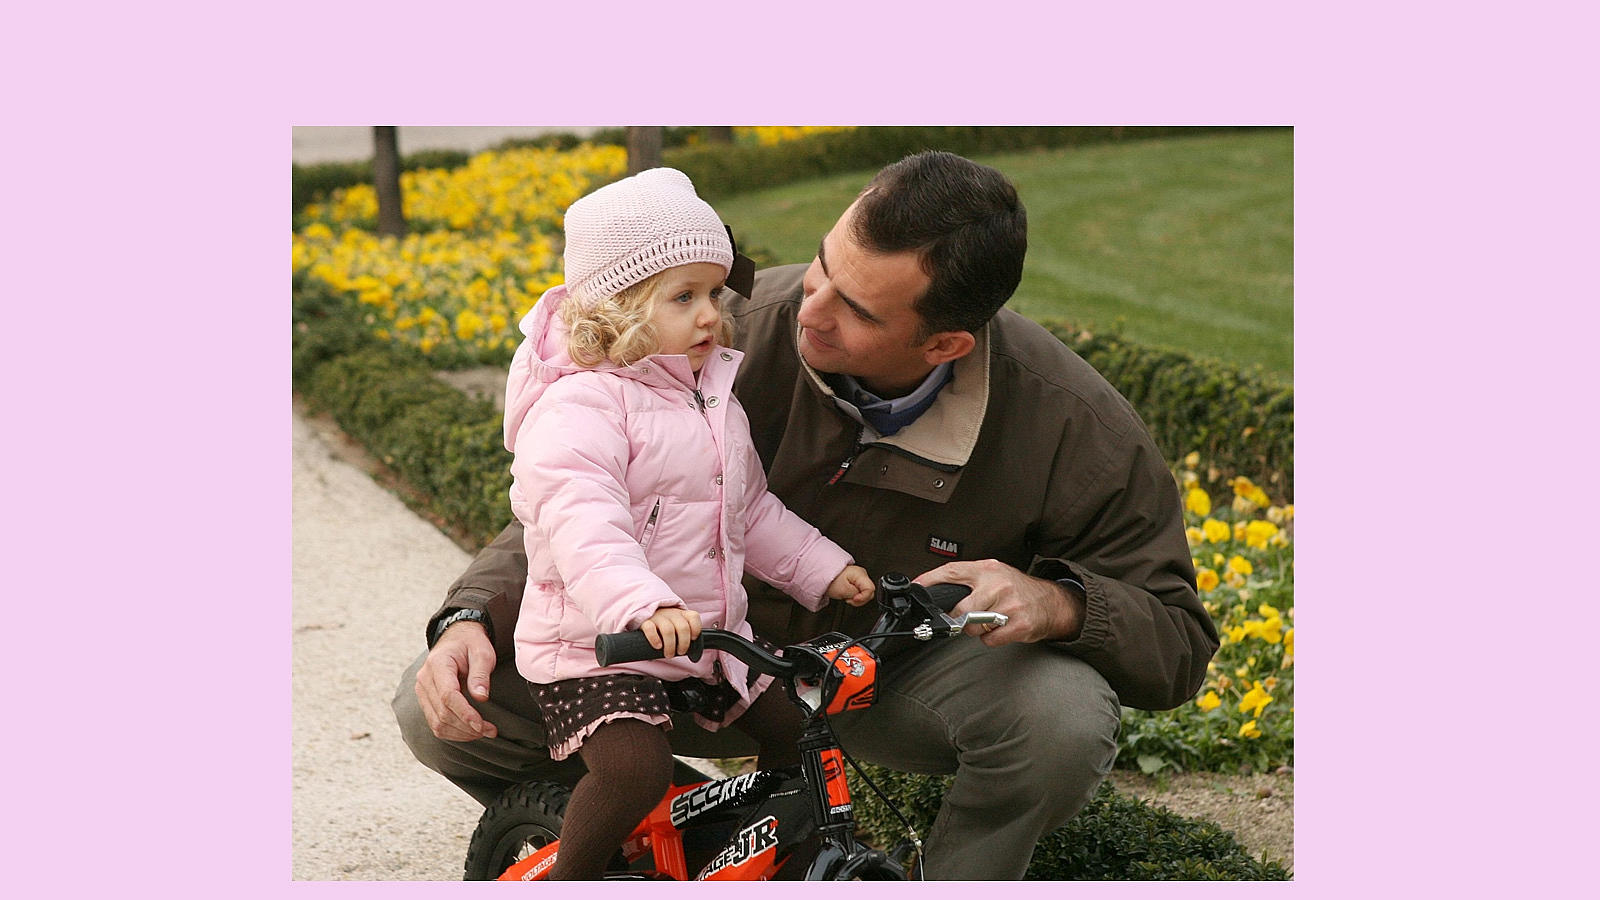 La Princesa, con un gorrito rosa a juego con su abrigo y su vestido, aprende a montar en bici en los jardines del Palacio de la Zarzuela junto a su padre Don Felipe